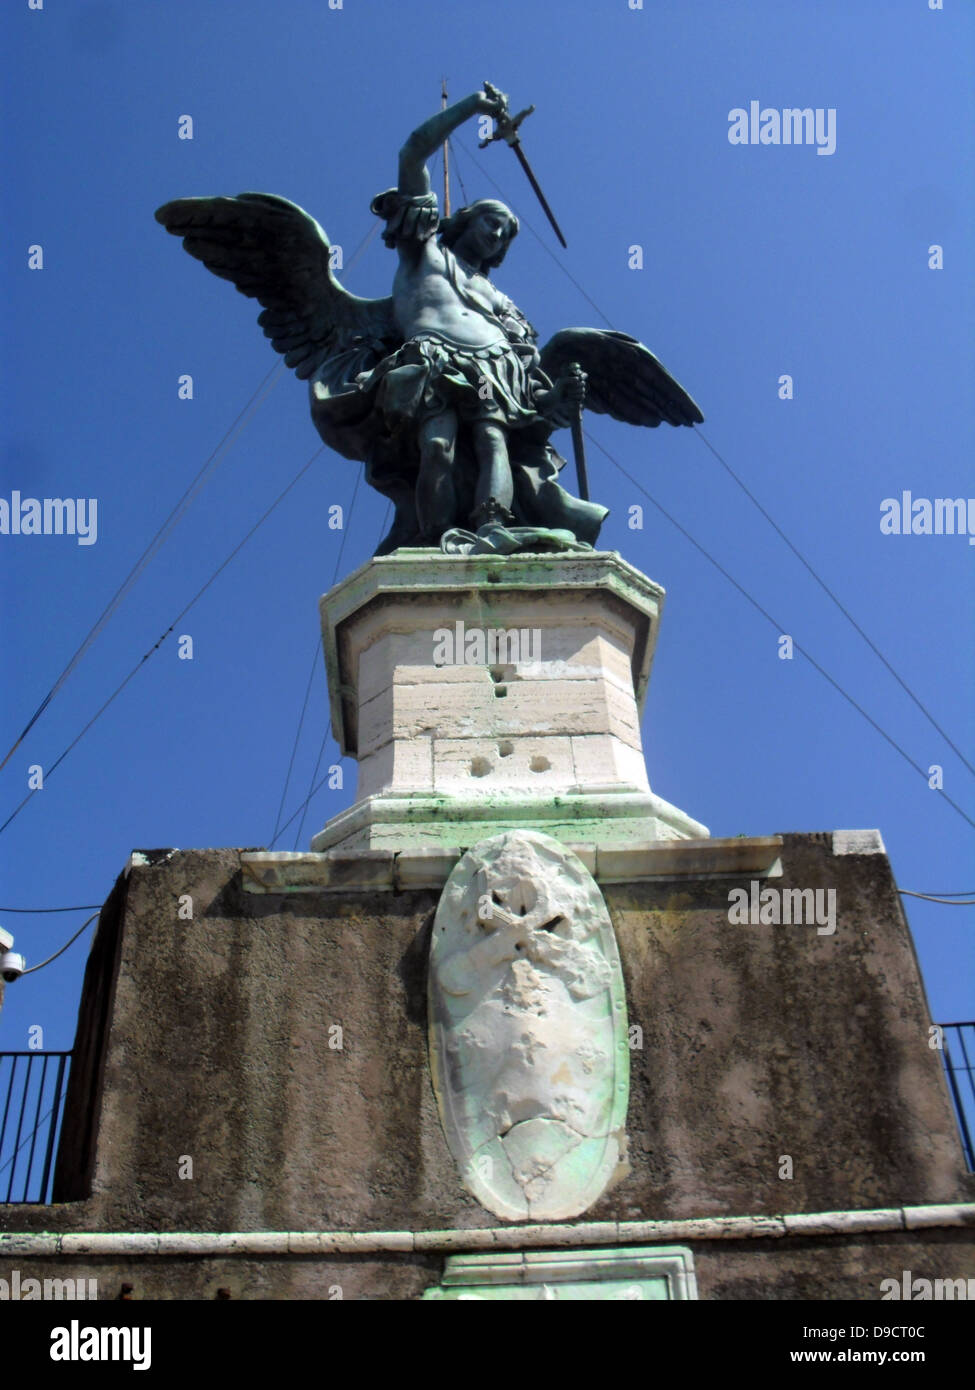 La statua in bronzo di San Michele Arcangelo, in piedi sulla sommità del castello di San Angelo, Roma, modellata nel 1753 da Pietro Anton von Verschaffelt (1710û1793). Il Mausoleo di Adriano, usualmente noto come Castel Sant'Angelo, Roma, Italia. Foto Stock